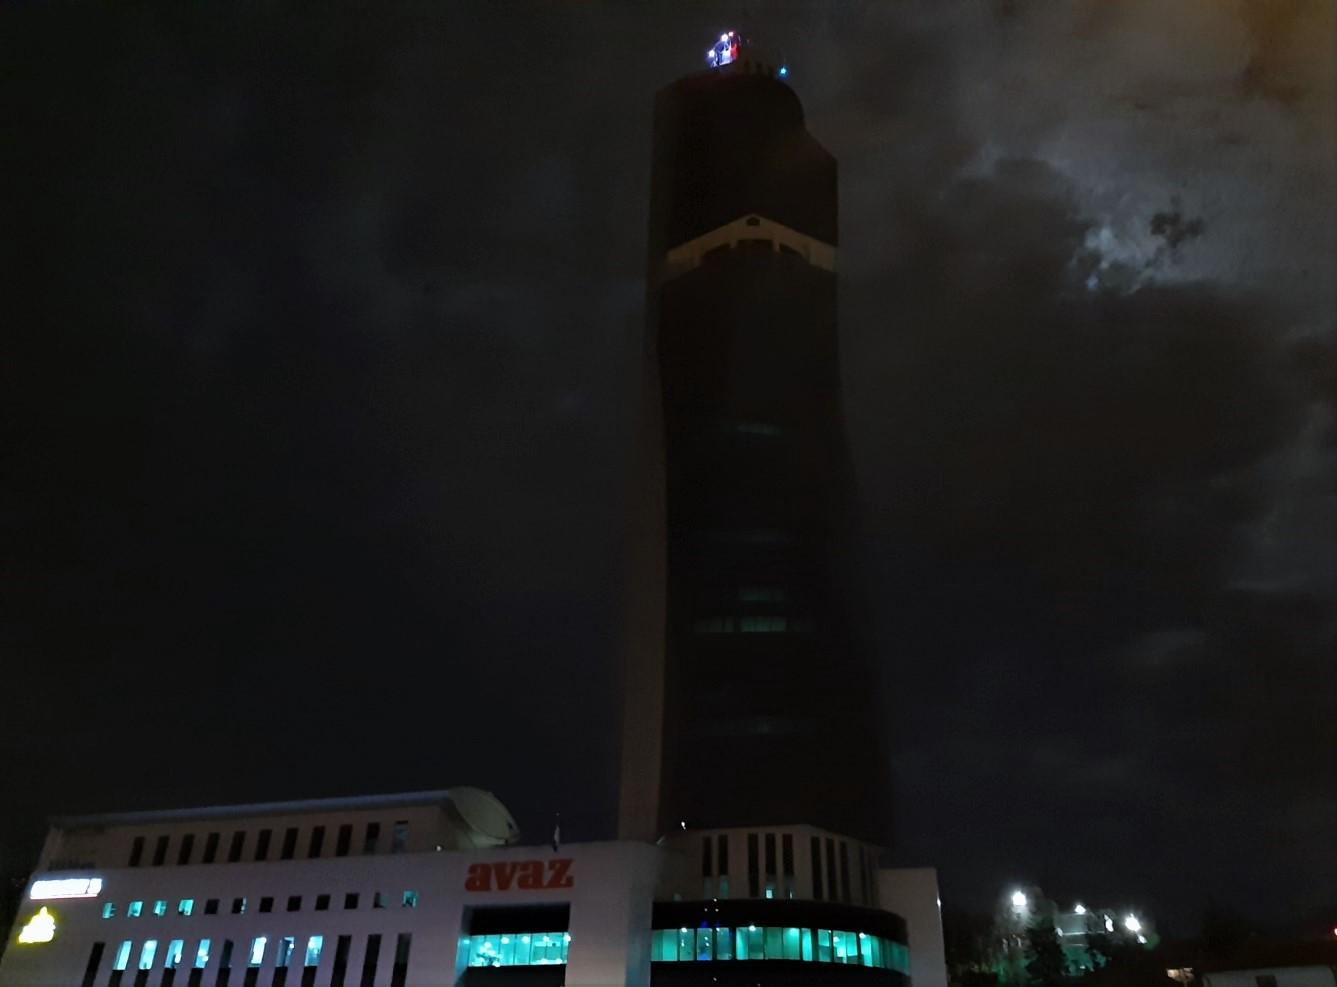 Ugašena svjetla na najvišoj zgradi u regionu - Avaz